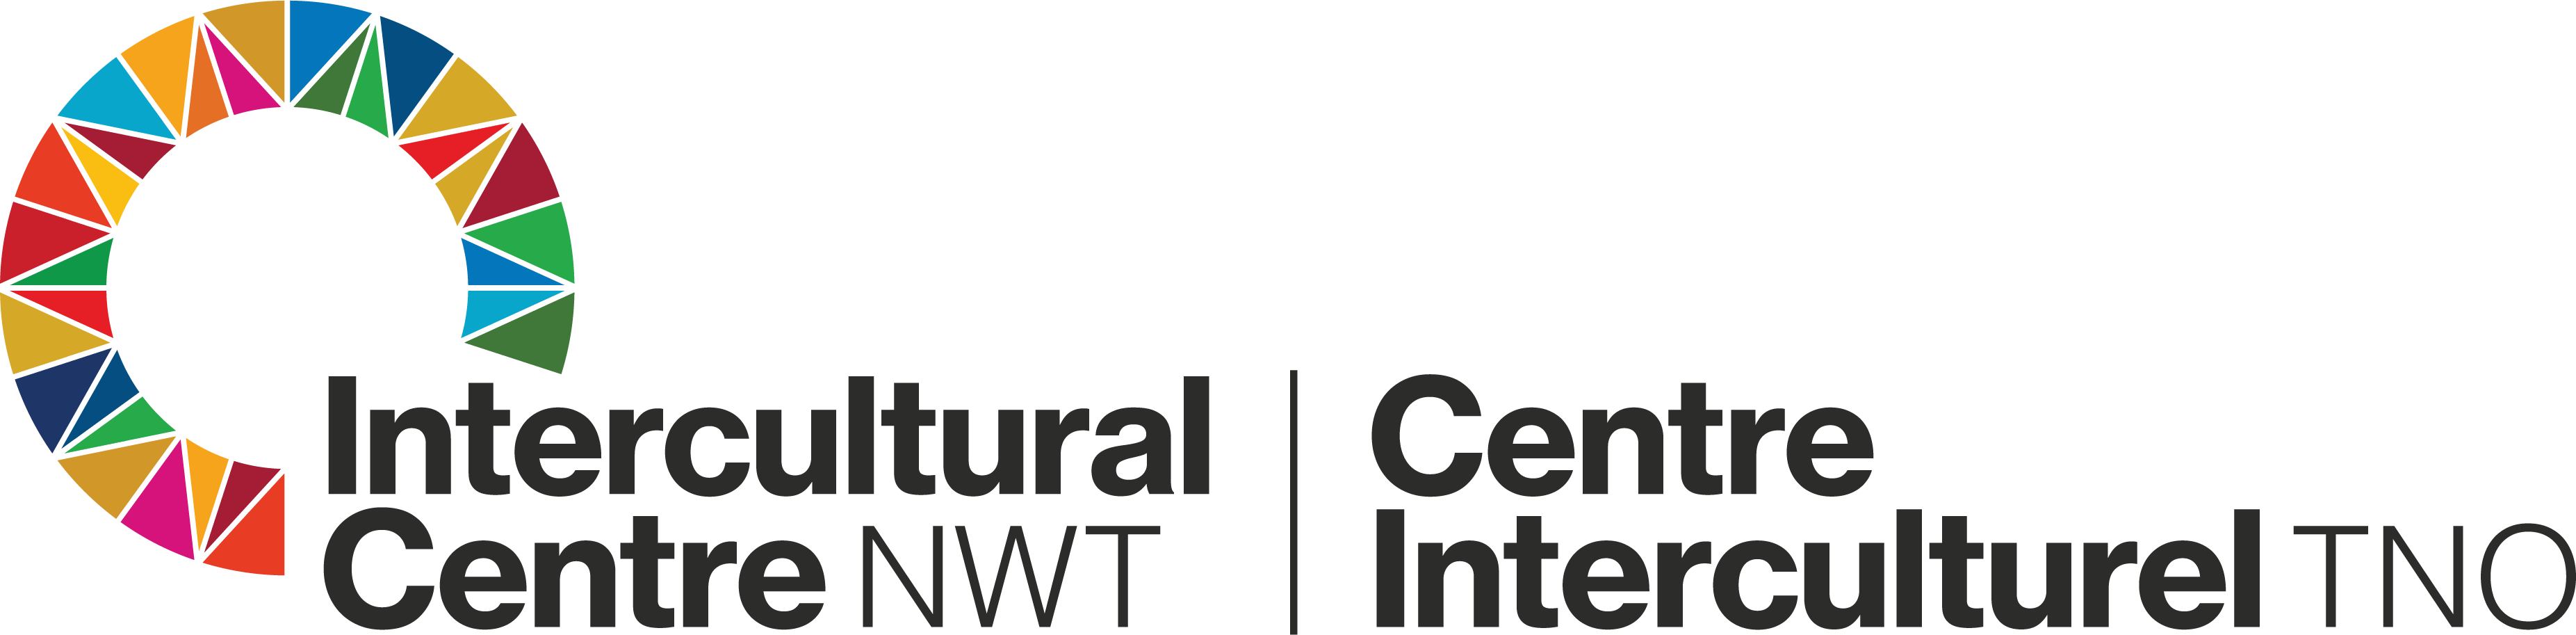 Intercultural Centre NWT